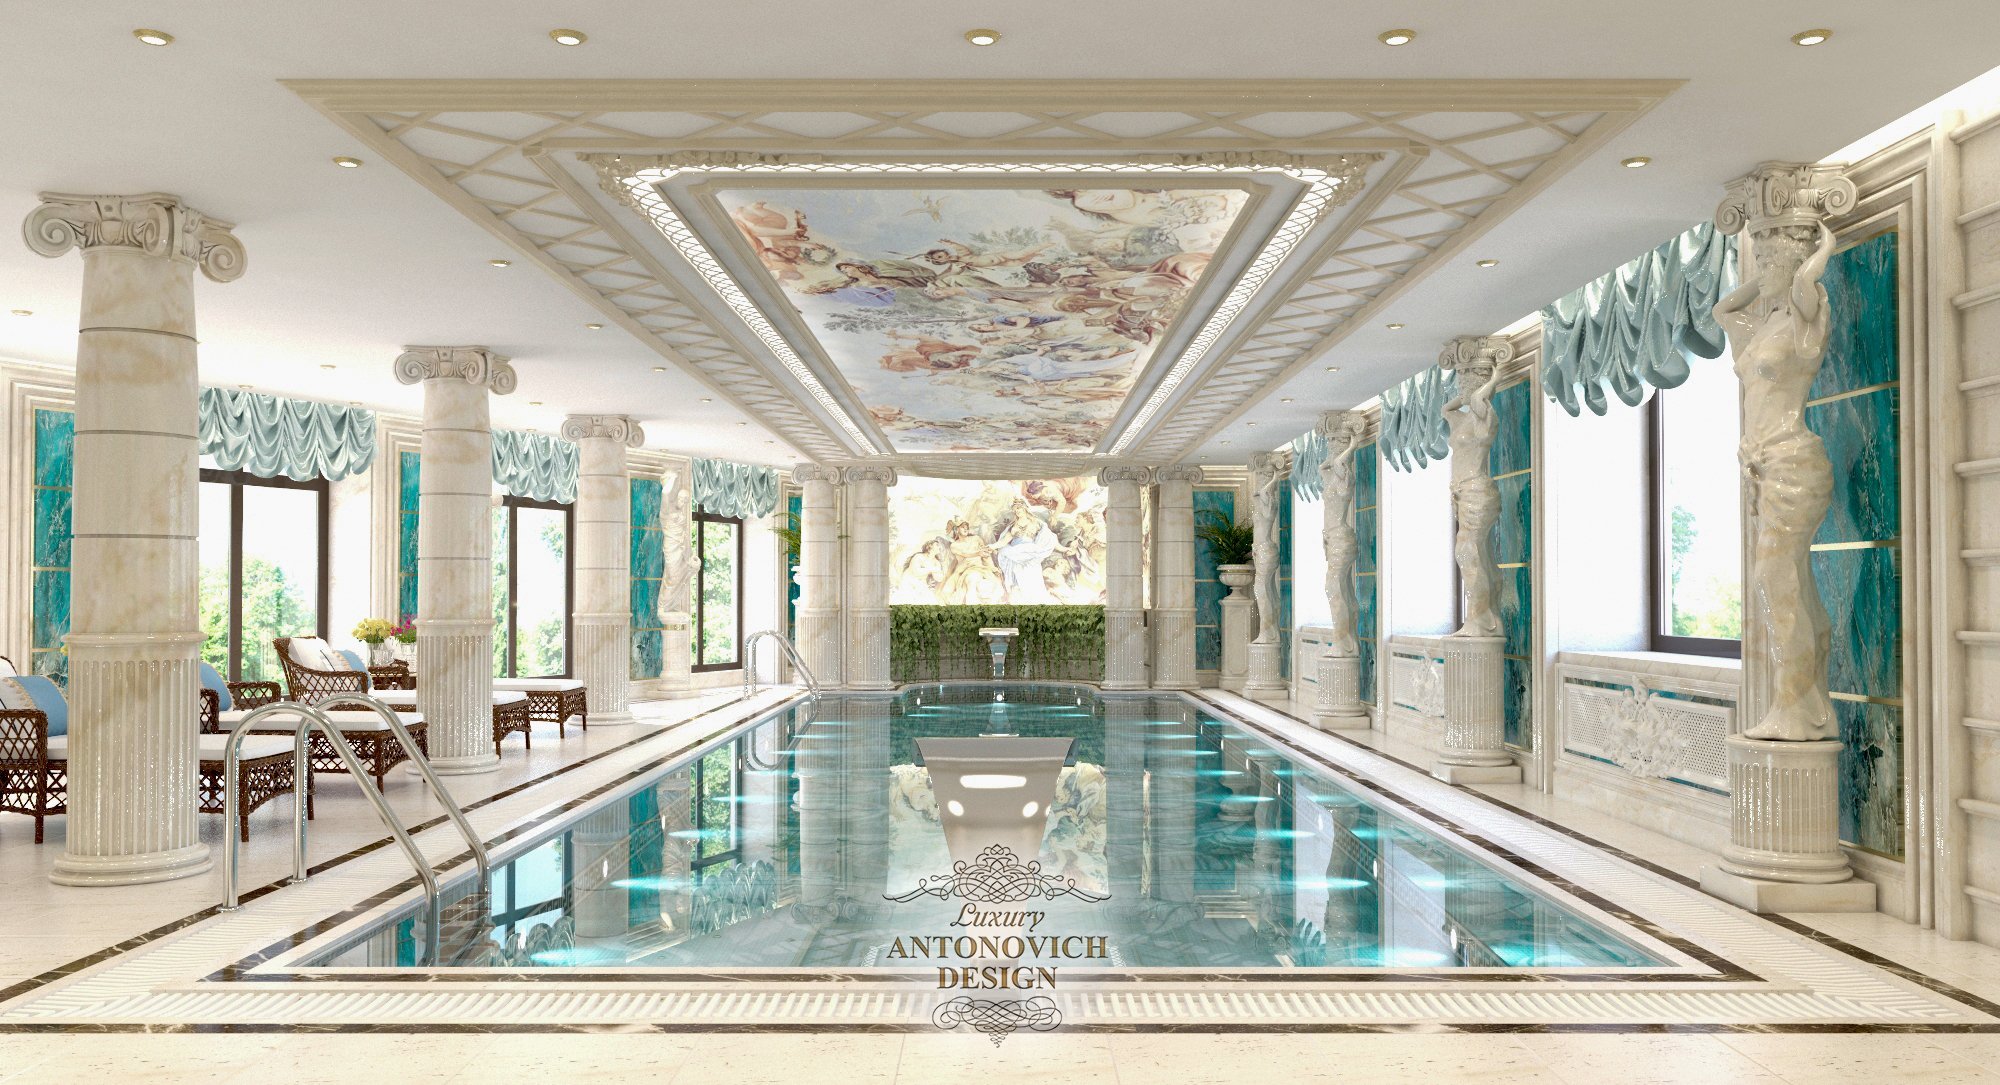 Ультрамариновая подсветка и автоматическая фильтрация воды в дизайне роскошного бассейна в изысканном классическом стиле